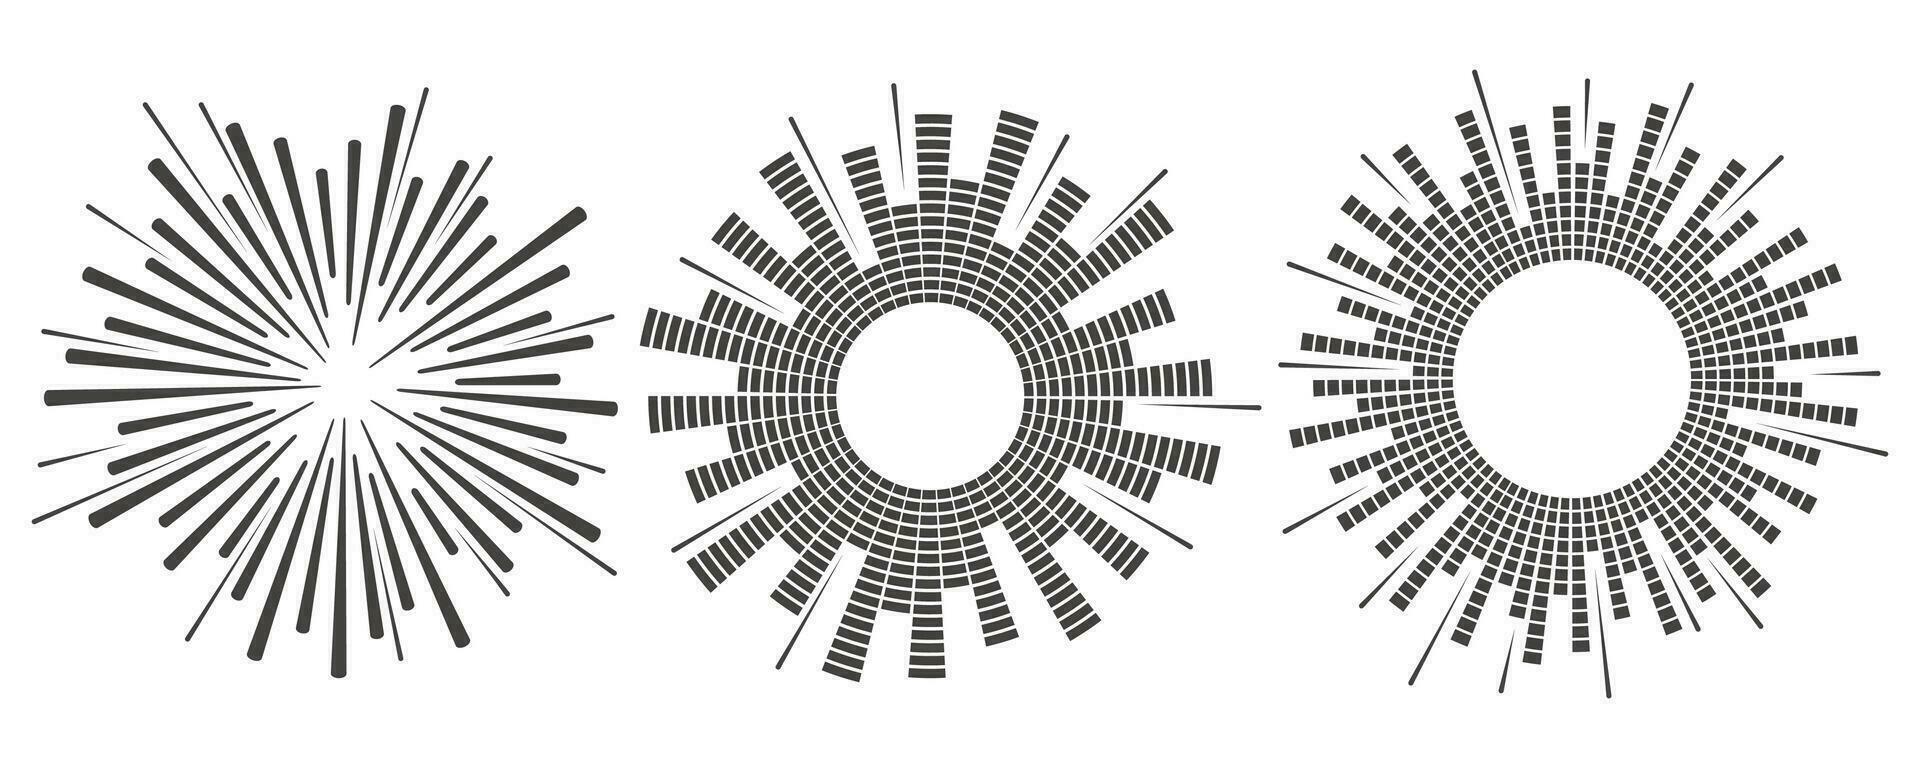 Kreis Klang Welle. Audio- Musik- Ausgleich. runden kreisförmig Symbole Satz. Spektrum radial Muster und Frequenz rahmen. Vektor Design